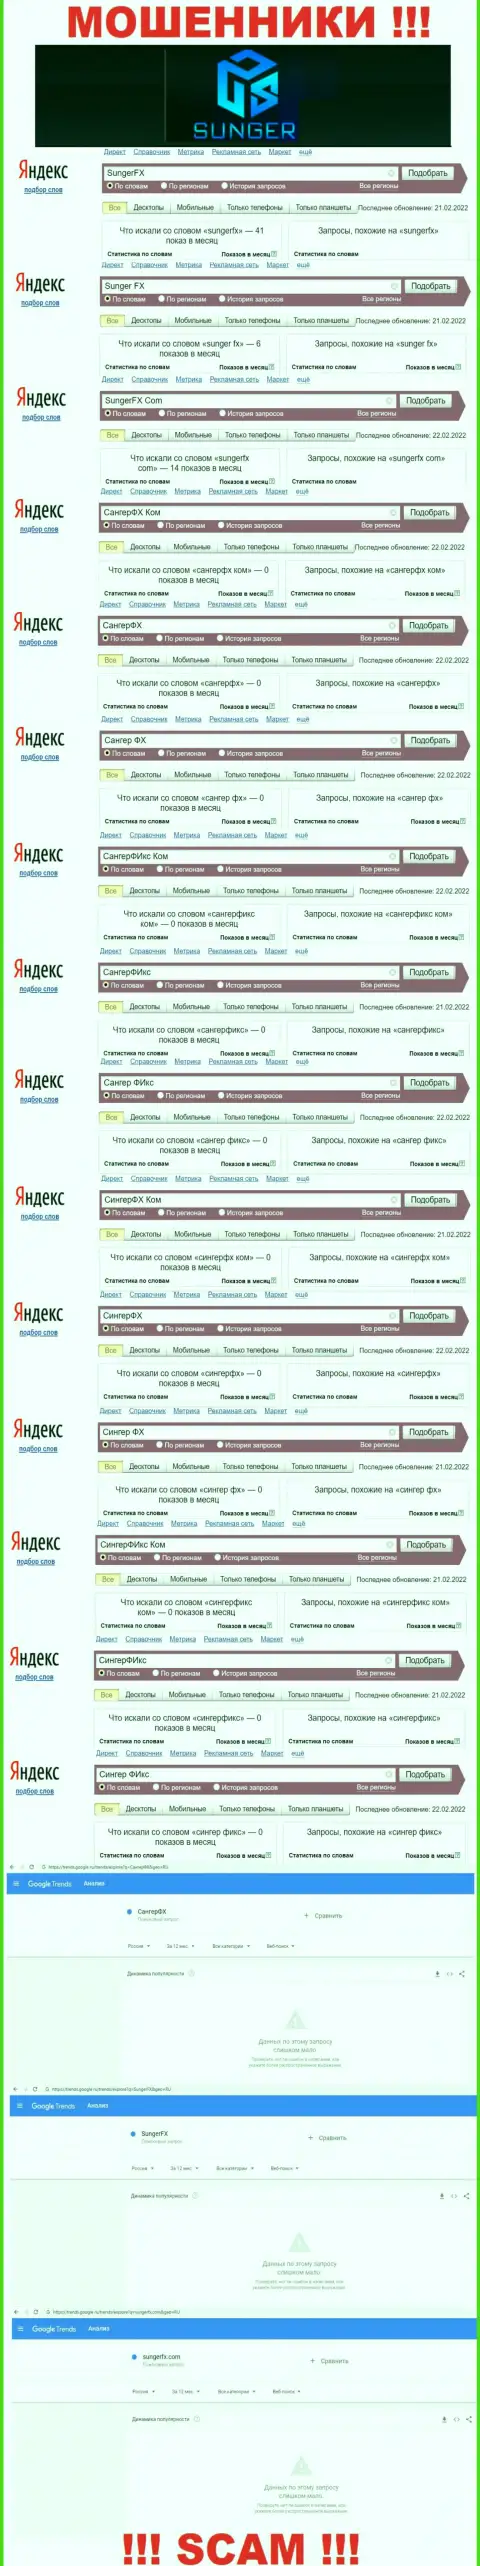 SungerFX - это ЛОХОТРОНЩИКИ, сколько именно раз искали в поисковиках интернет сети указанную шарашку